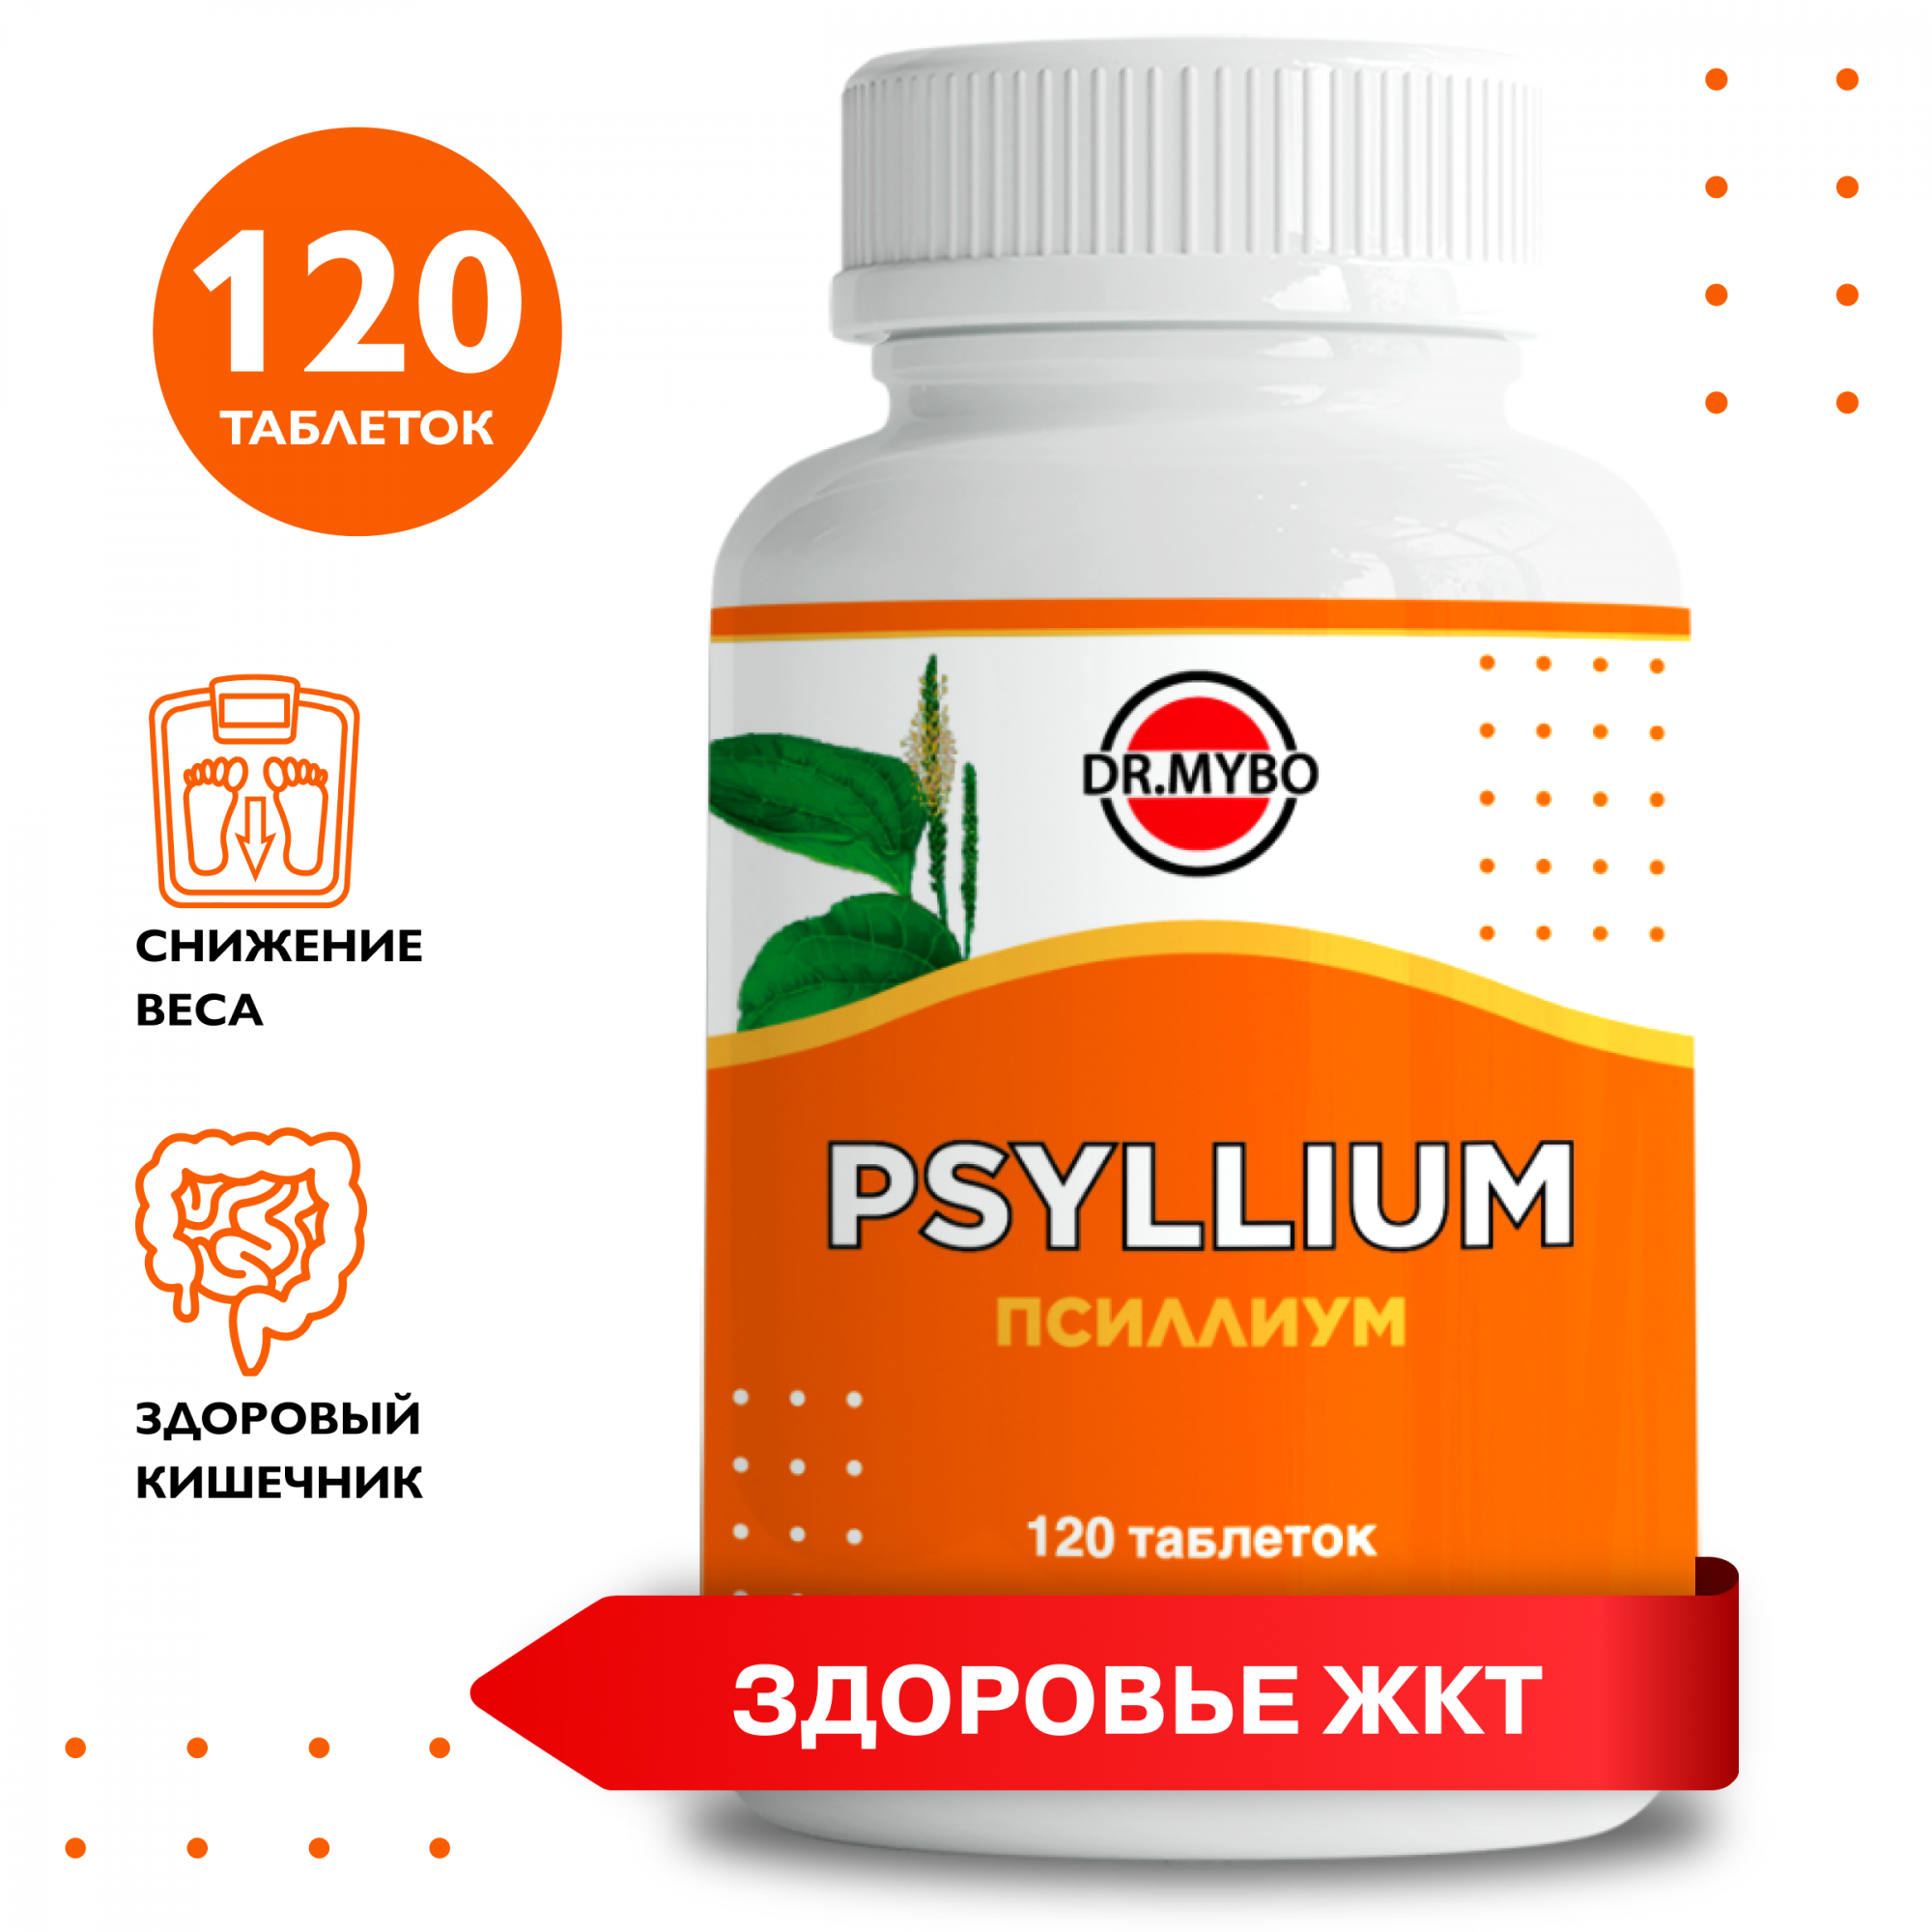 Клетчатка для похудения Dr.Mybo Псиллиум таблетки 120 шт. - купить в интернет-магазинах, цены на Мегамаркет | витамины, минералы и пищевые добавки мб/т/псиллиум/120/шт/бн